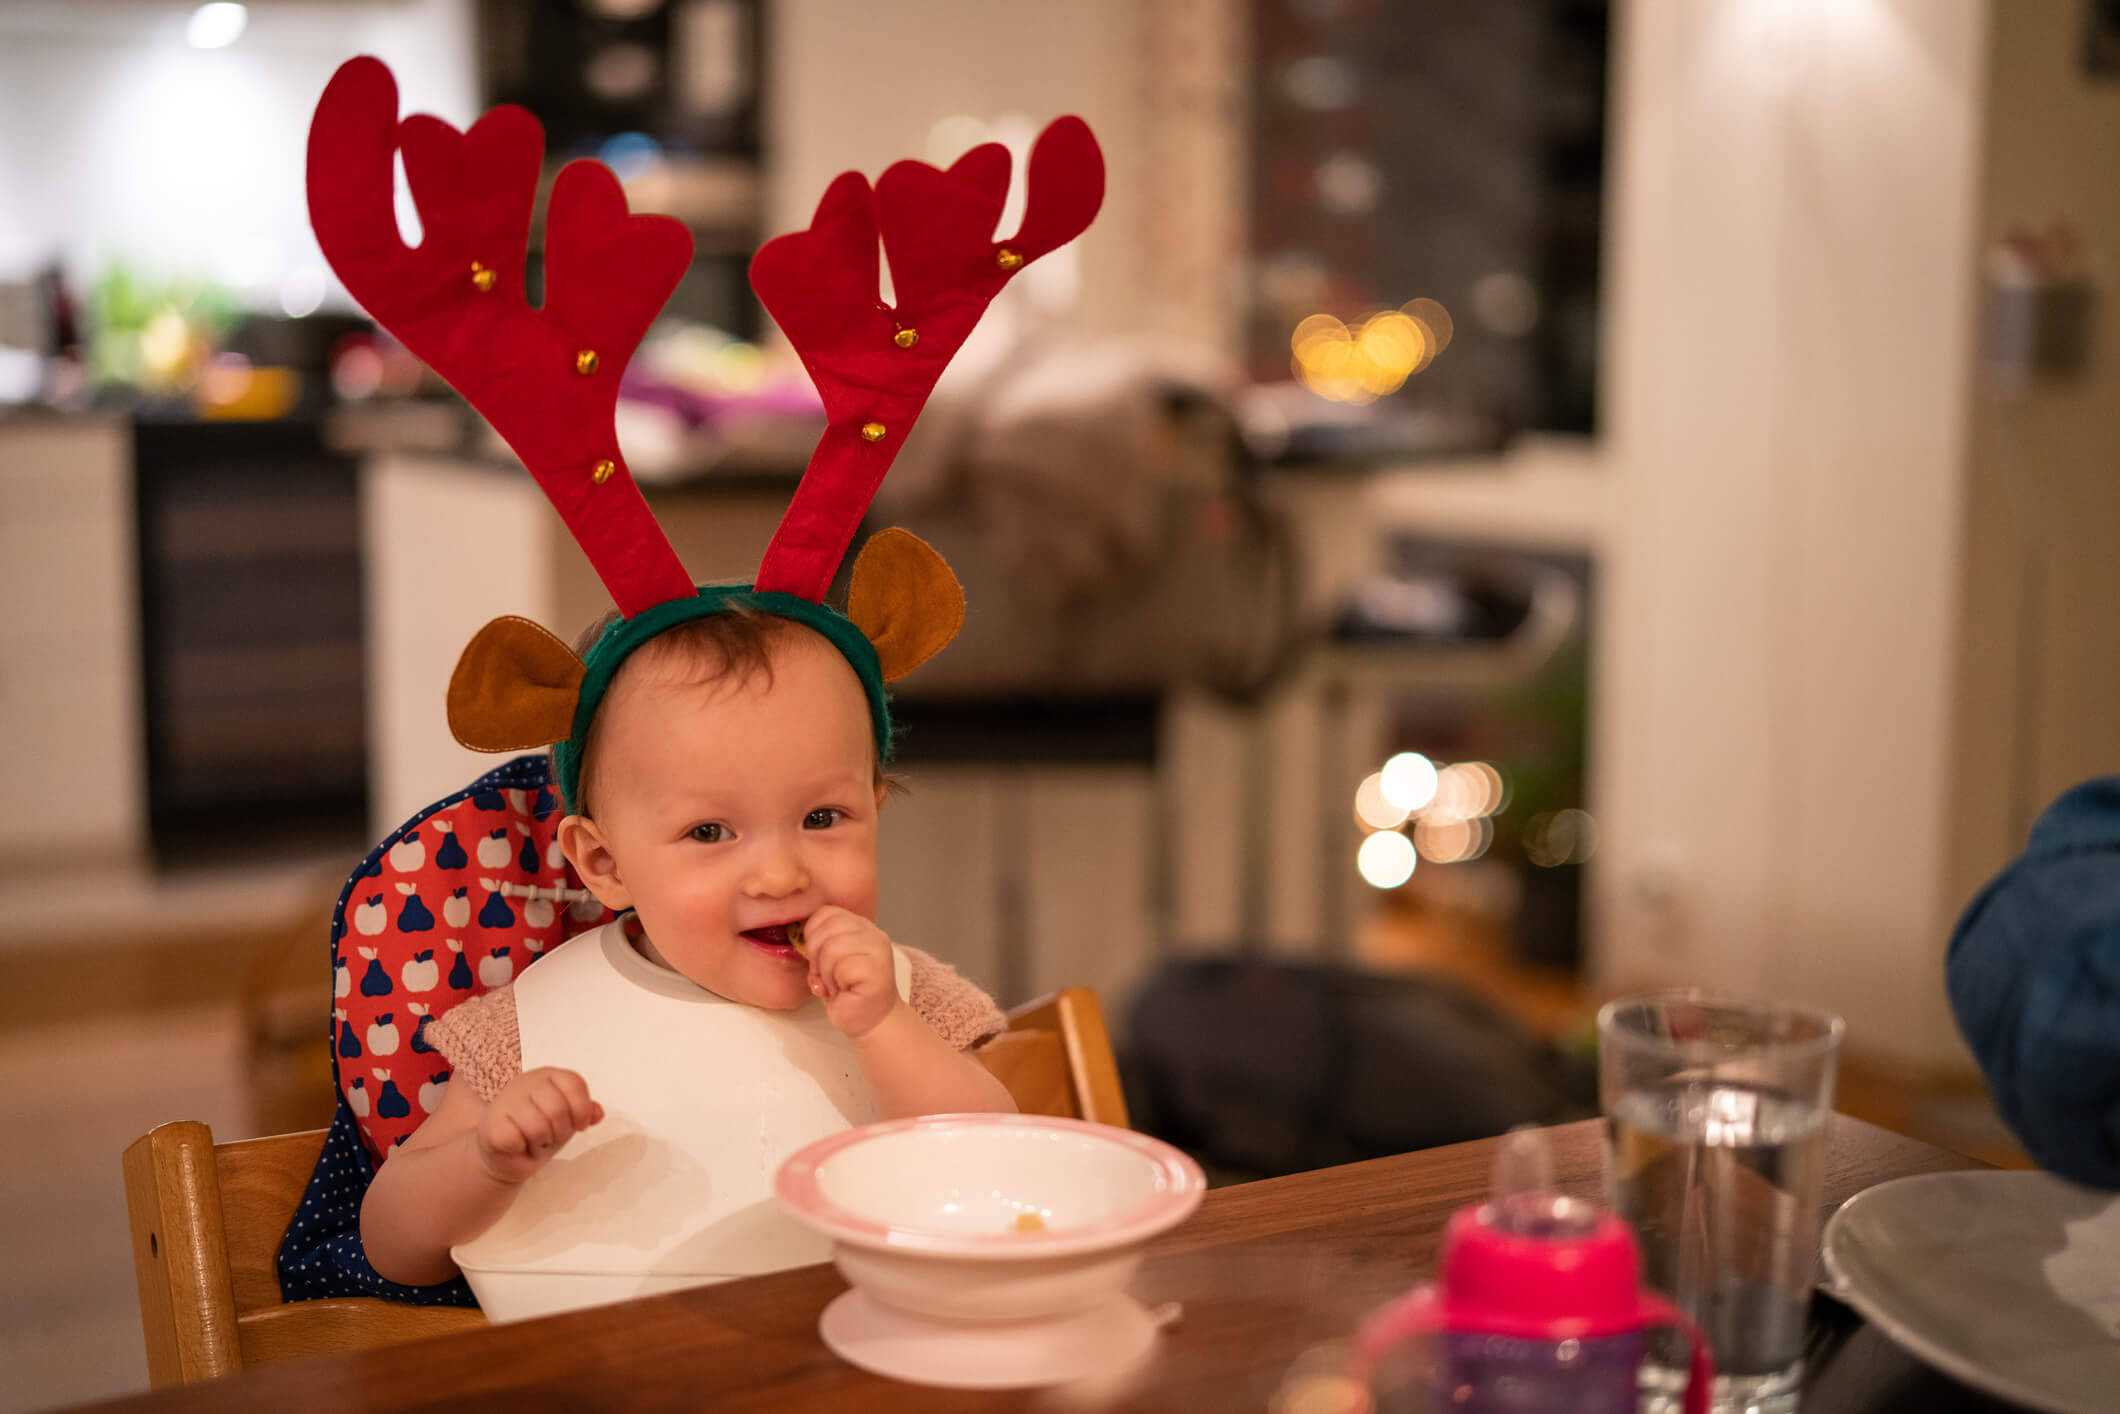 Bebê sentado à mesa, em frente a um pratinho de comida. Ele tem a pele clara, está sorrindo e colocando algum alimento na boca e usa duas grandes orelhas de renas vermelhas.